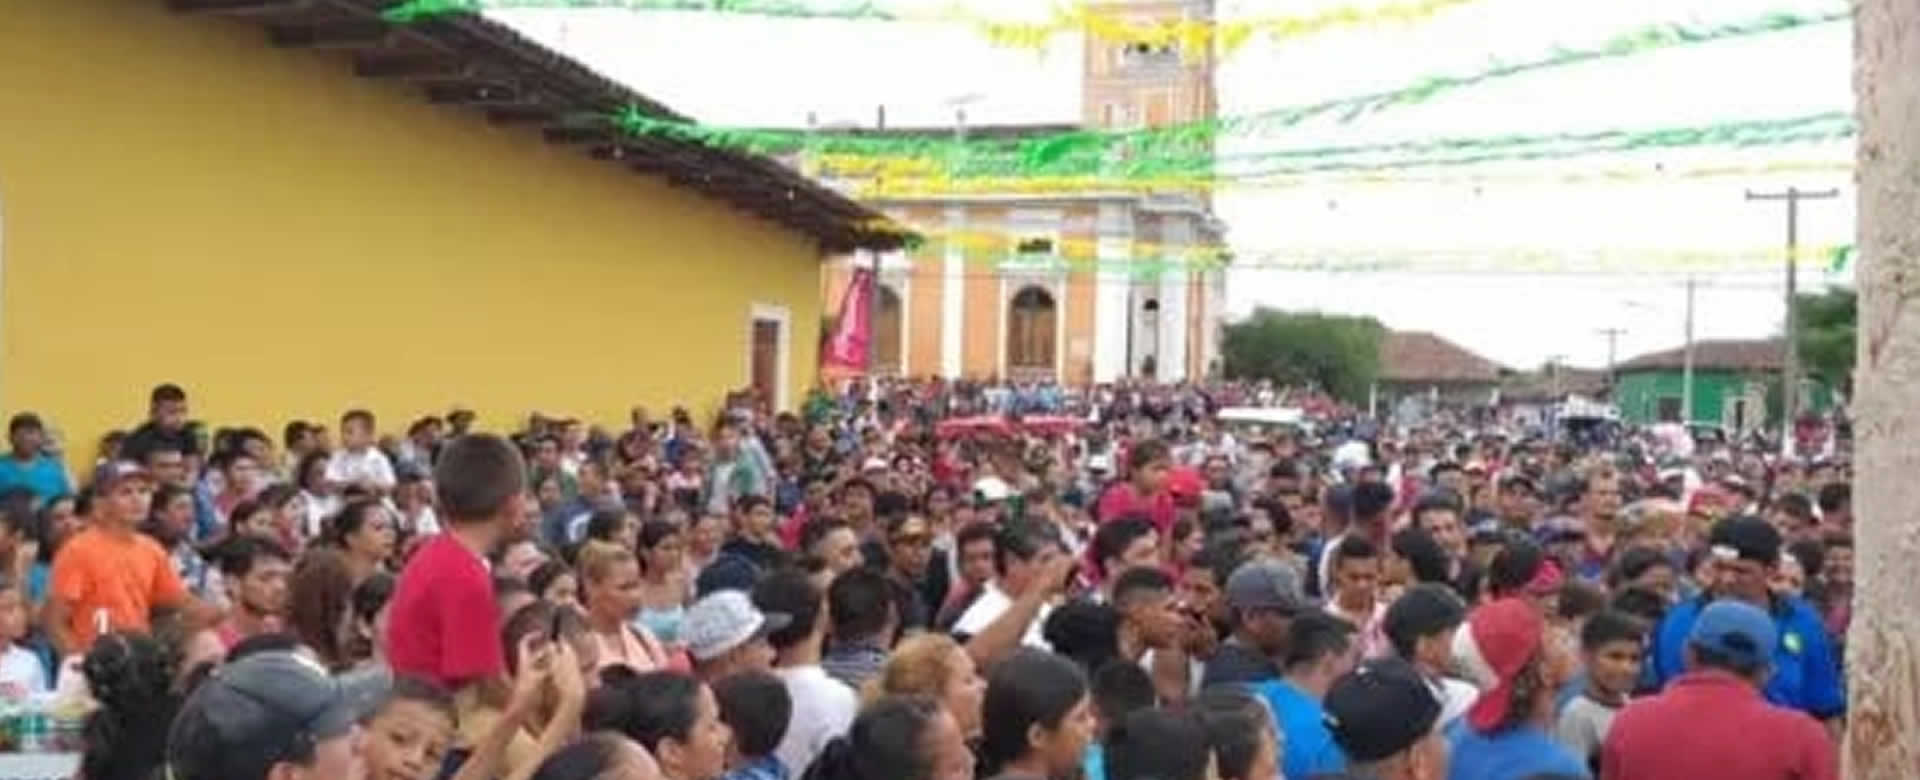 Granada realiza fiesta taurina en honor a la Virgen de la Asunción